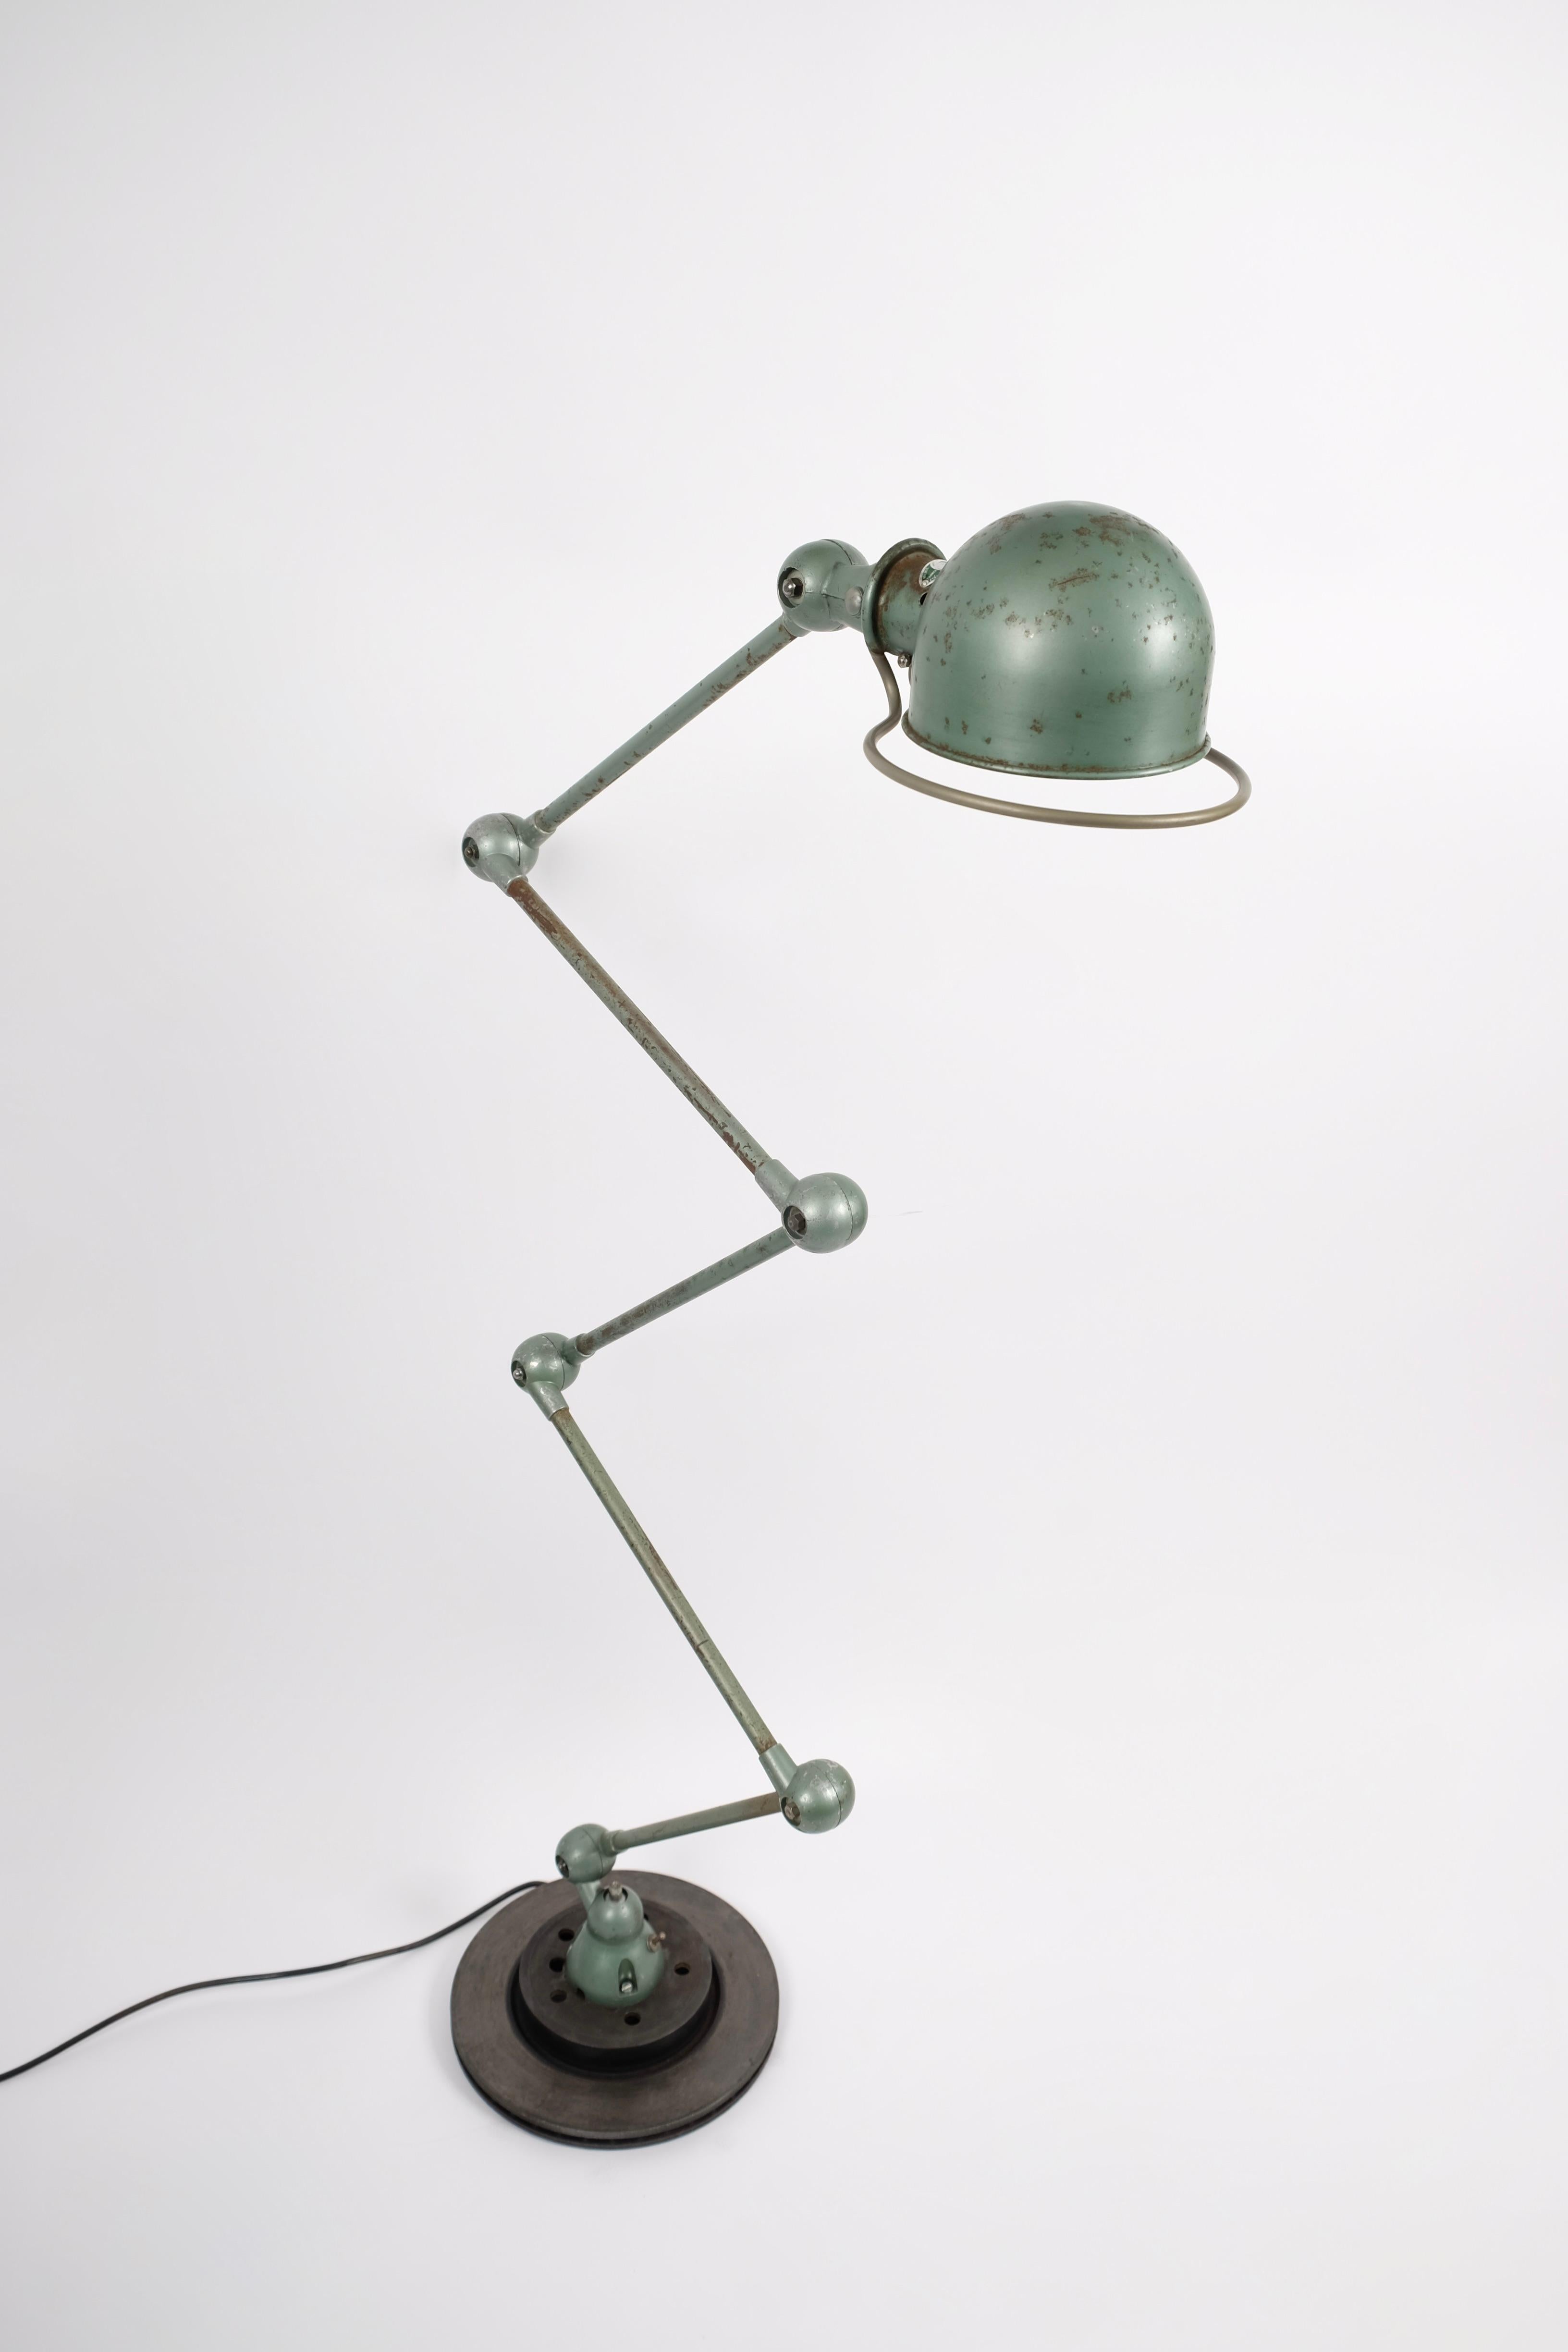 Beau lampadaire industriel Jieldé 5 bras laqué vert Vespa original.
Avec une plaque de métal verte du fabricant.
Chaque bras mesure 45 cm et peut être déplacé horizontalement.
Le store/tête pivote à 360 degrés autour du support de store.
Monté sur